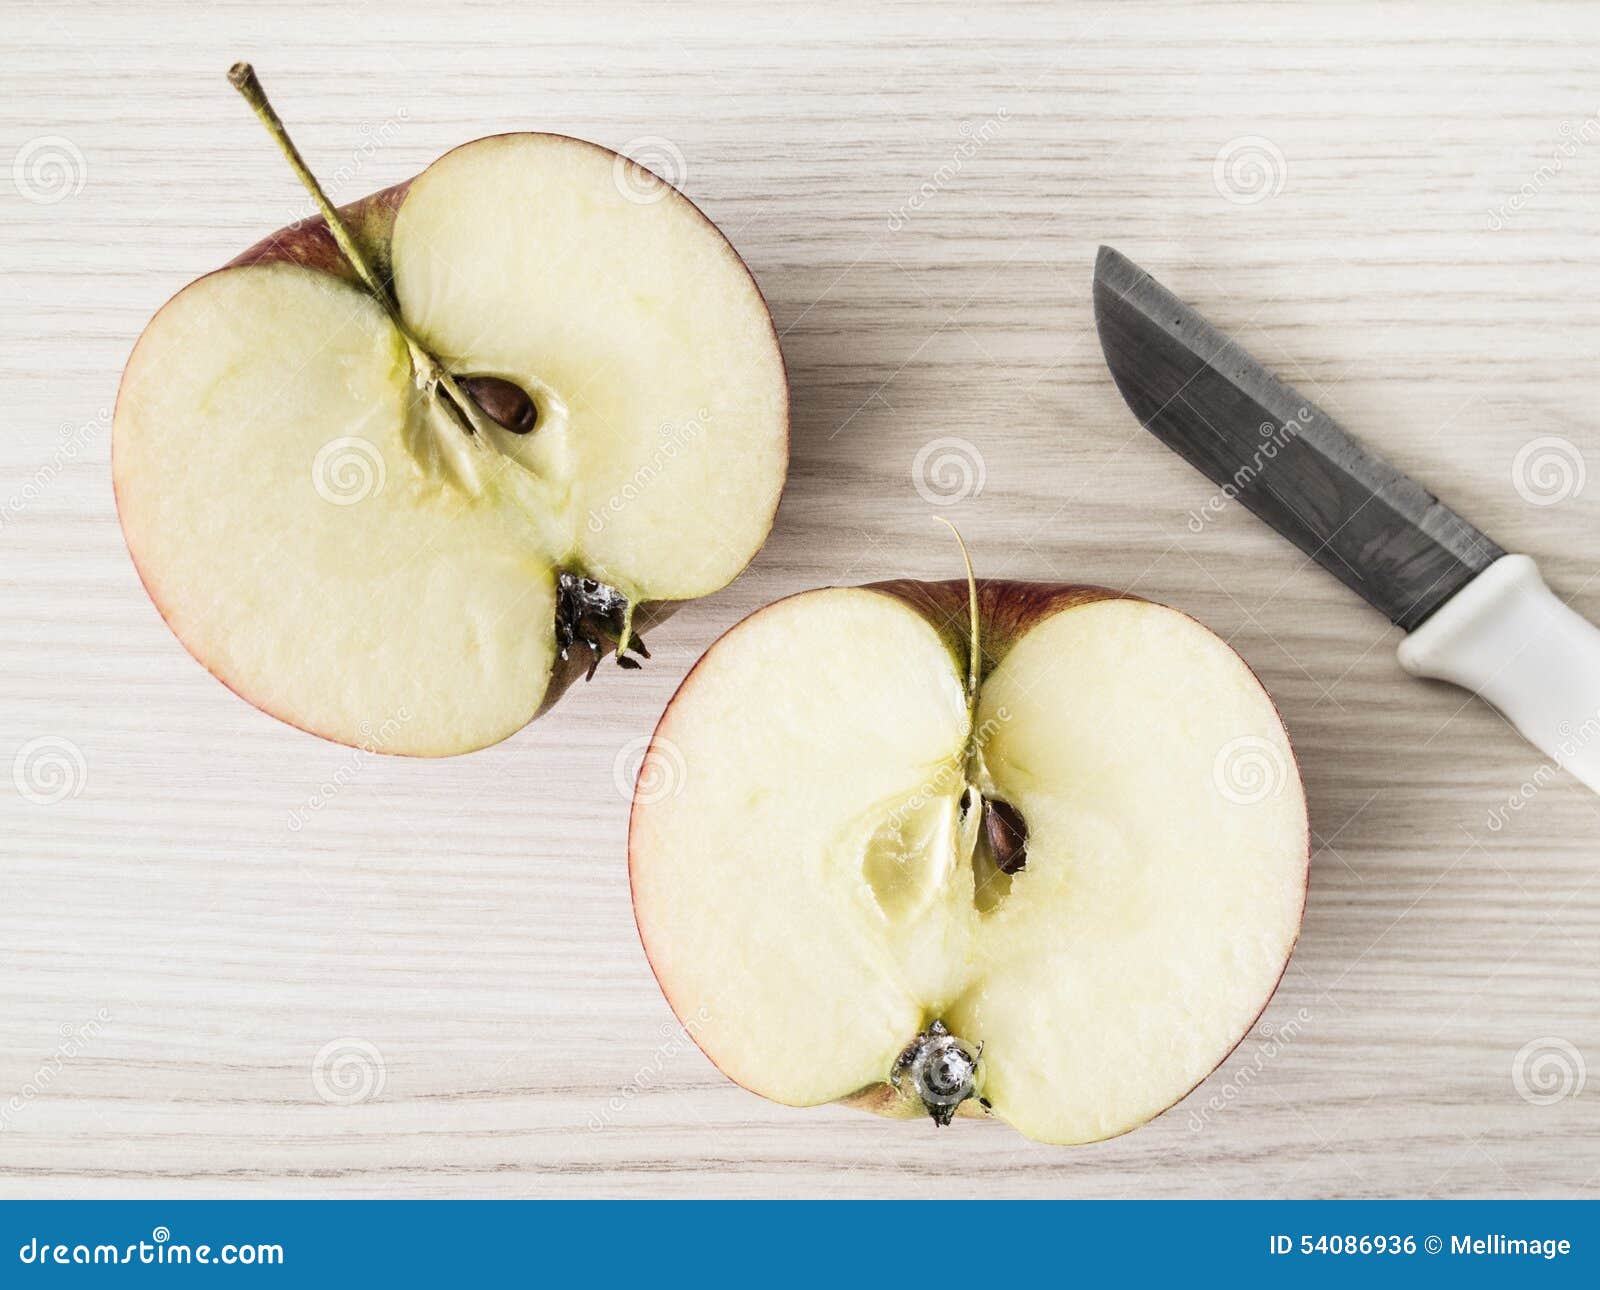 Две трети яблока. Половинка яблока. Пол яблока. Две половинки яблока. Деление яблока пополам.